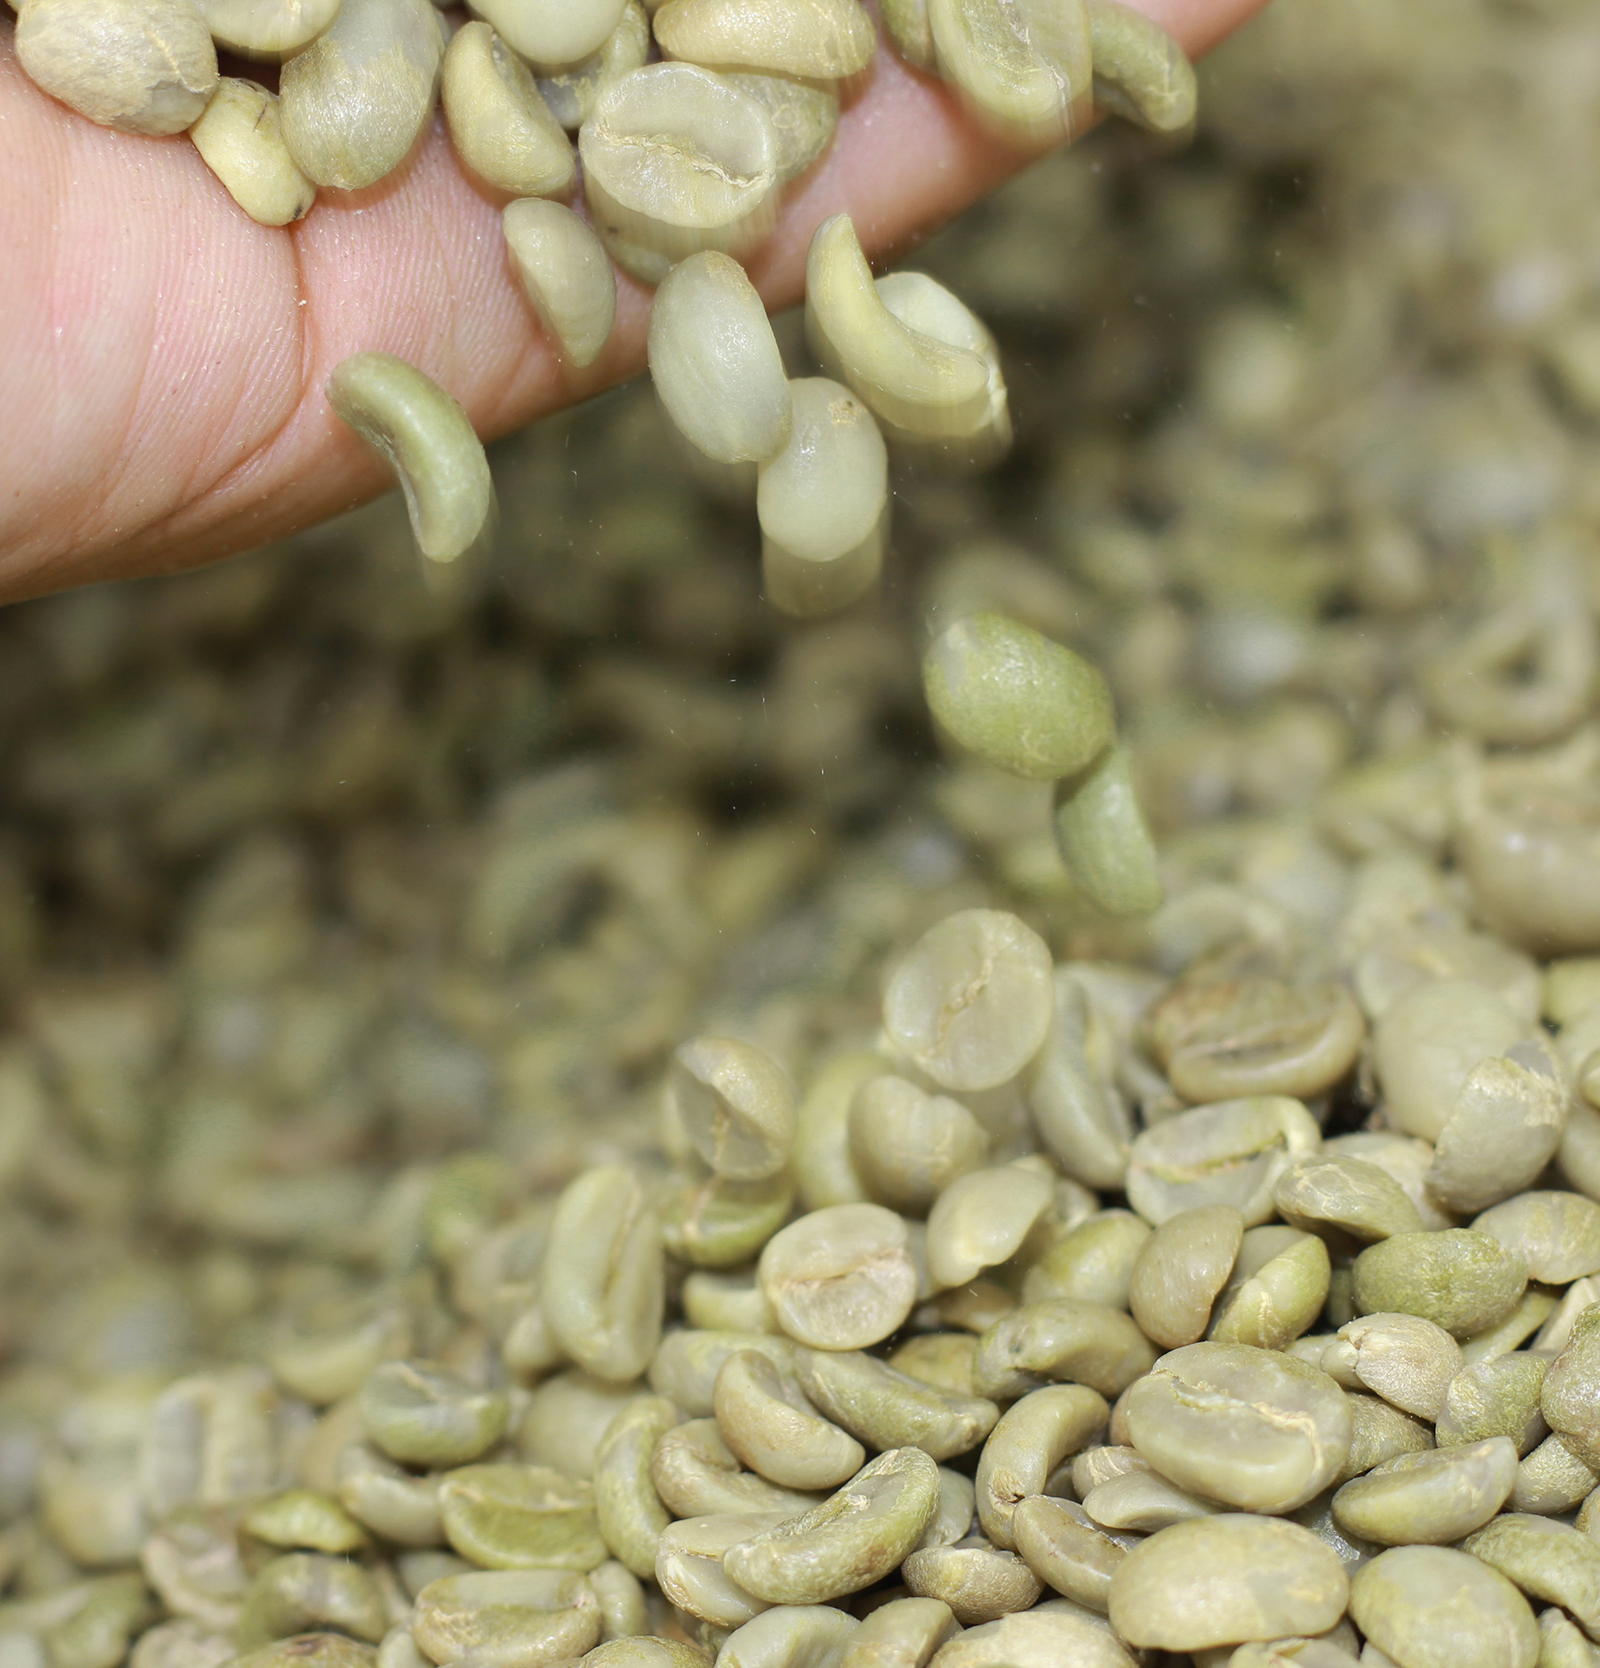 coffee 1kg cà phê rang mộc gói đậm gu thành phần 80% robusta + 20% arabica - cafe ngon nguyên chất đến từ đắk lắk - 2 gói mỗi gói 500gr - cam kết nguyên chất - xay sẵn dùng pha phin 5